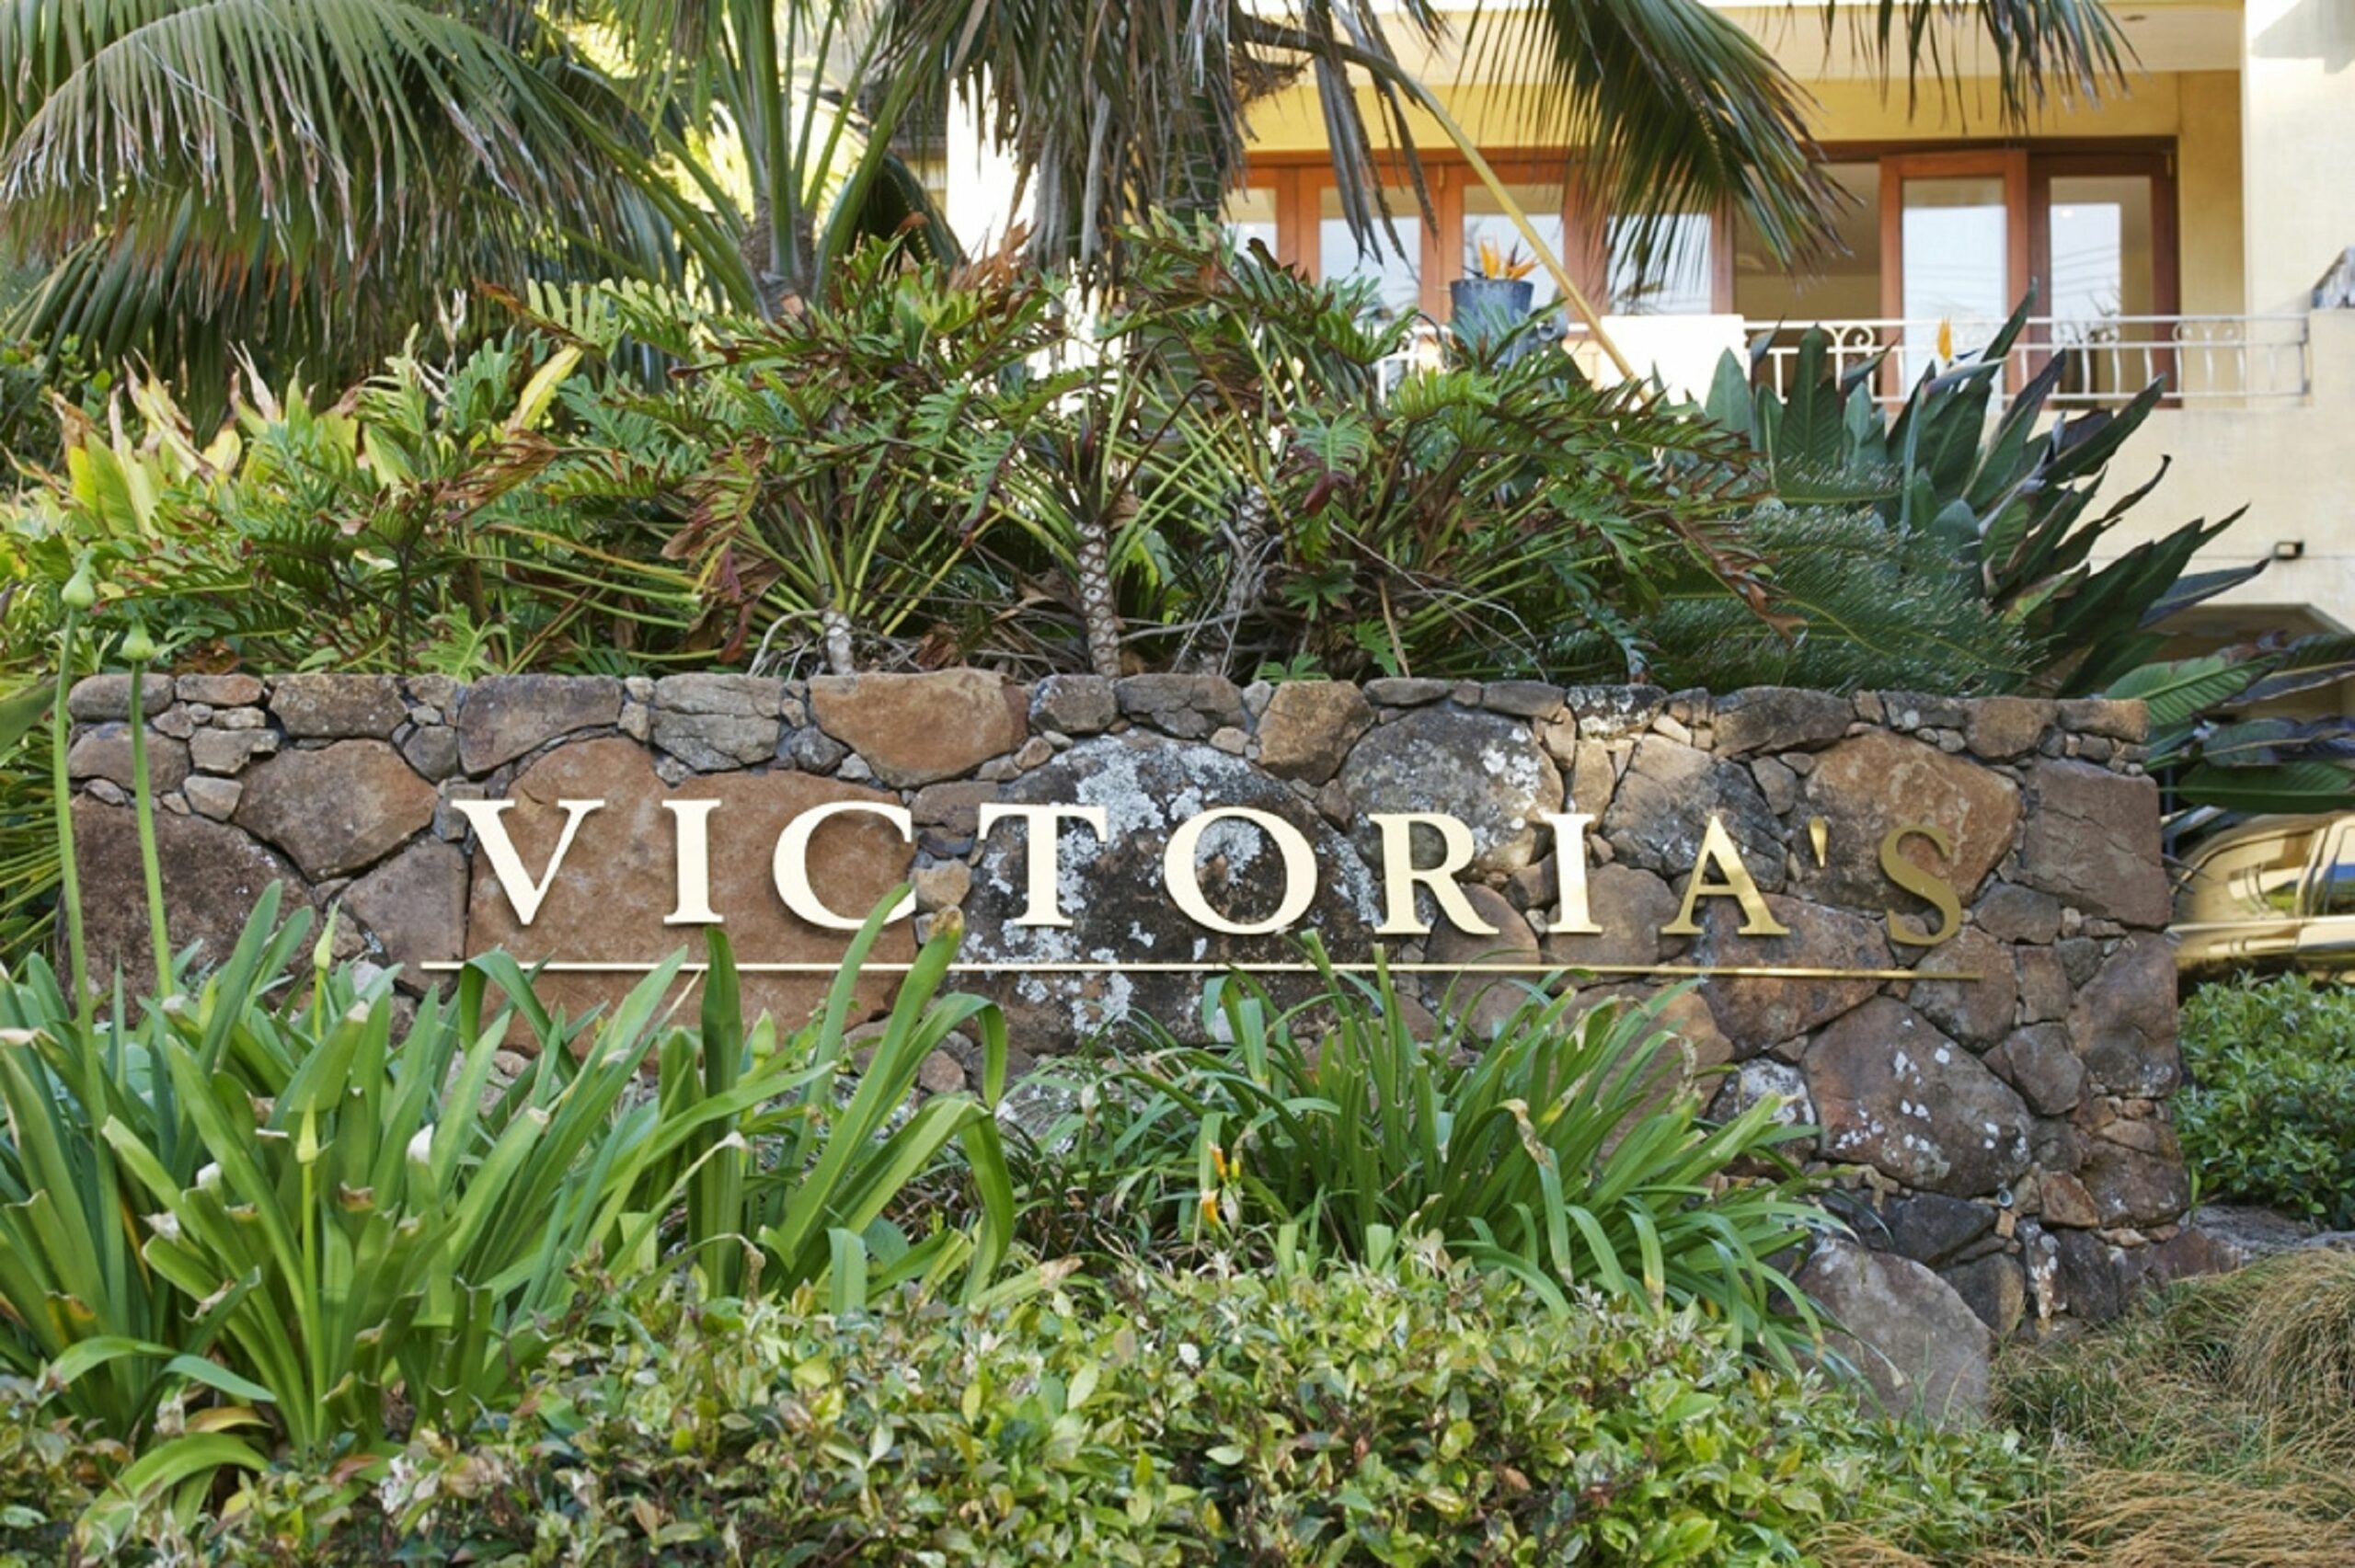 Victoria's at Wategos